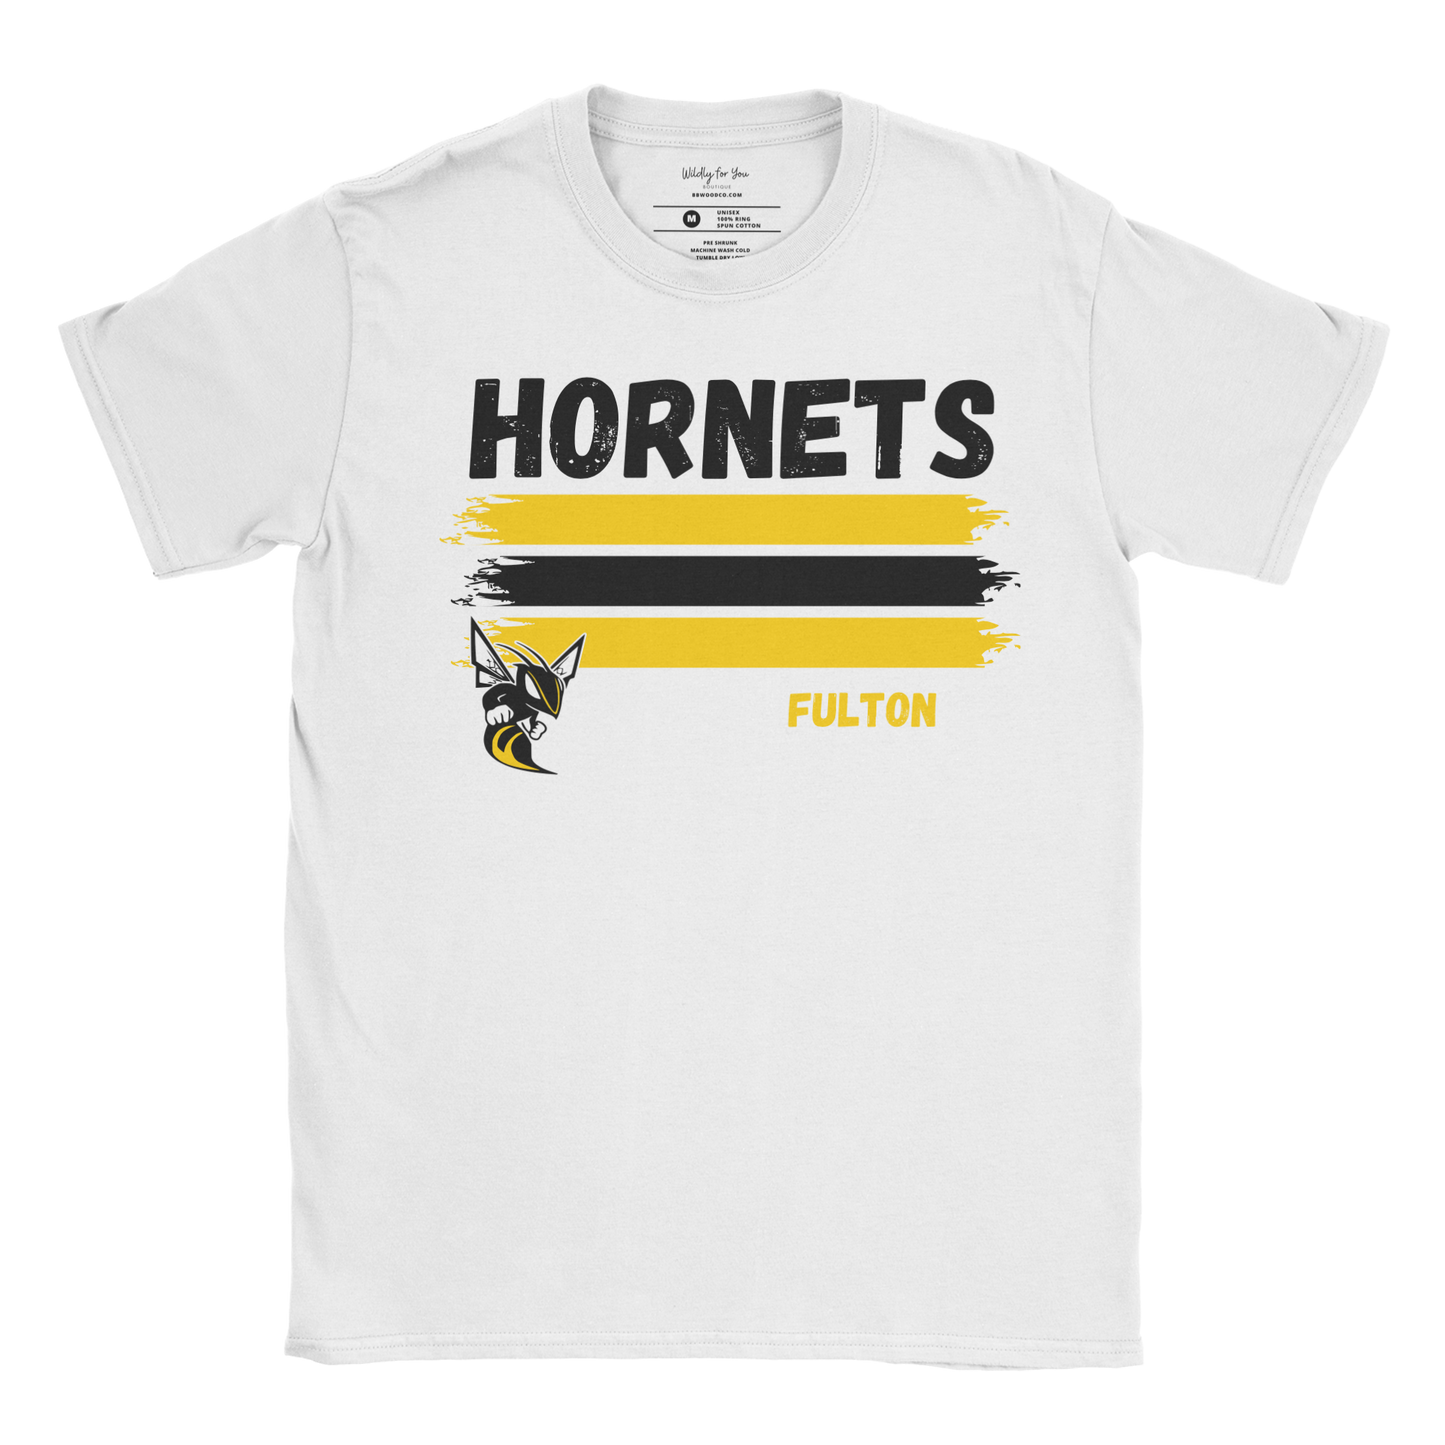 Fulton Hornets T-Shirt